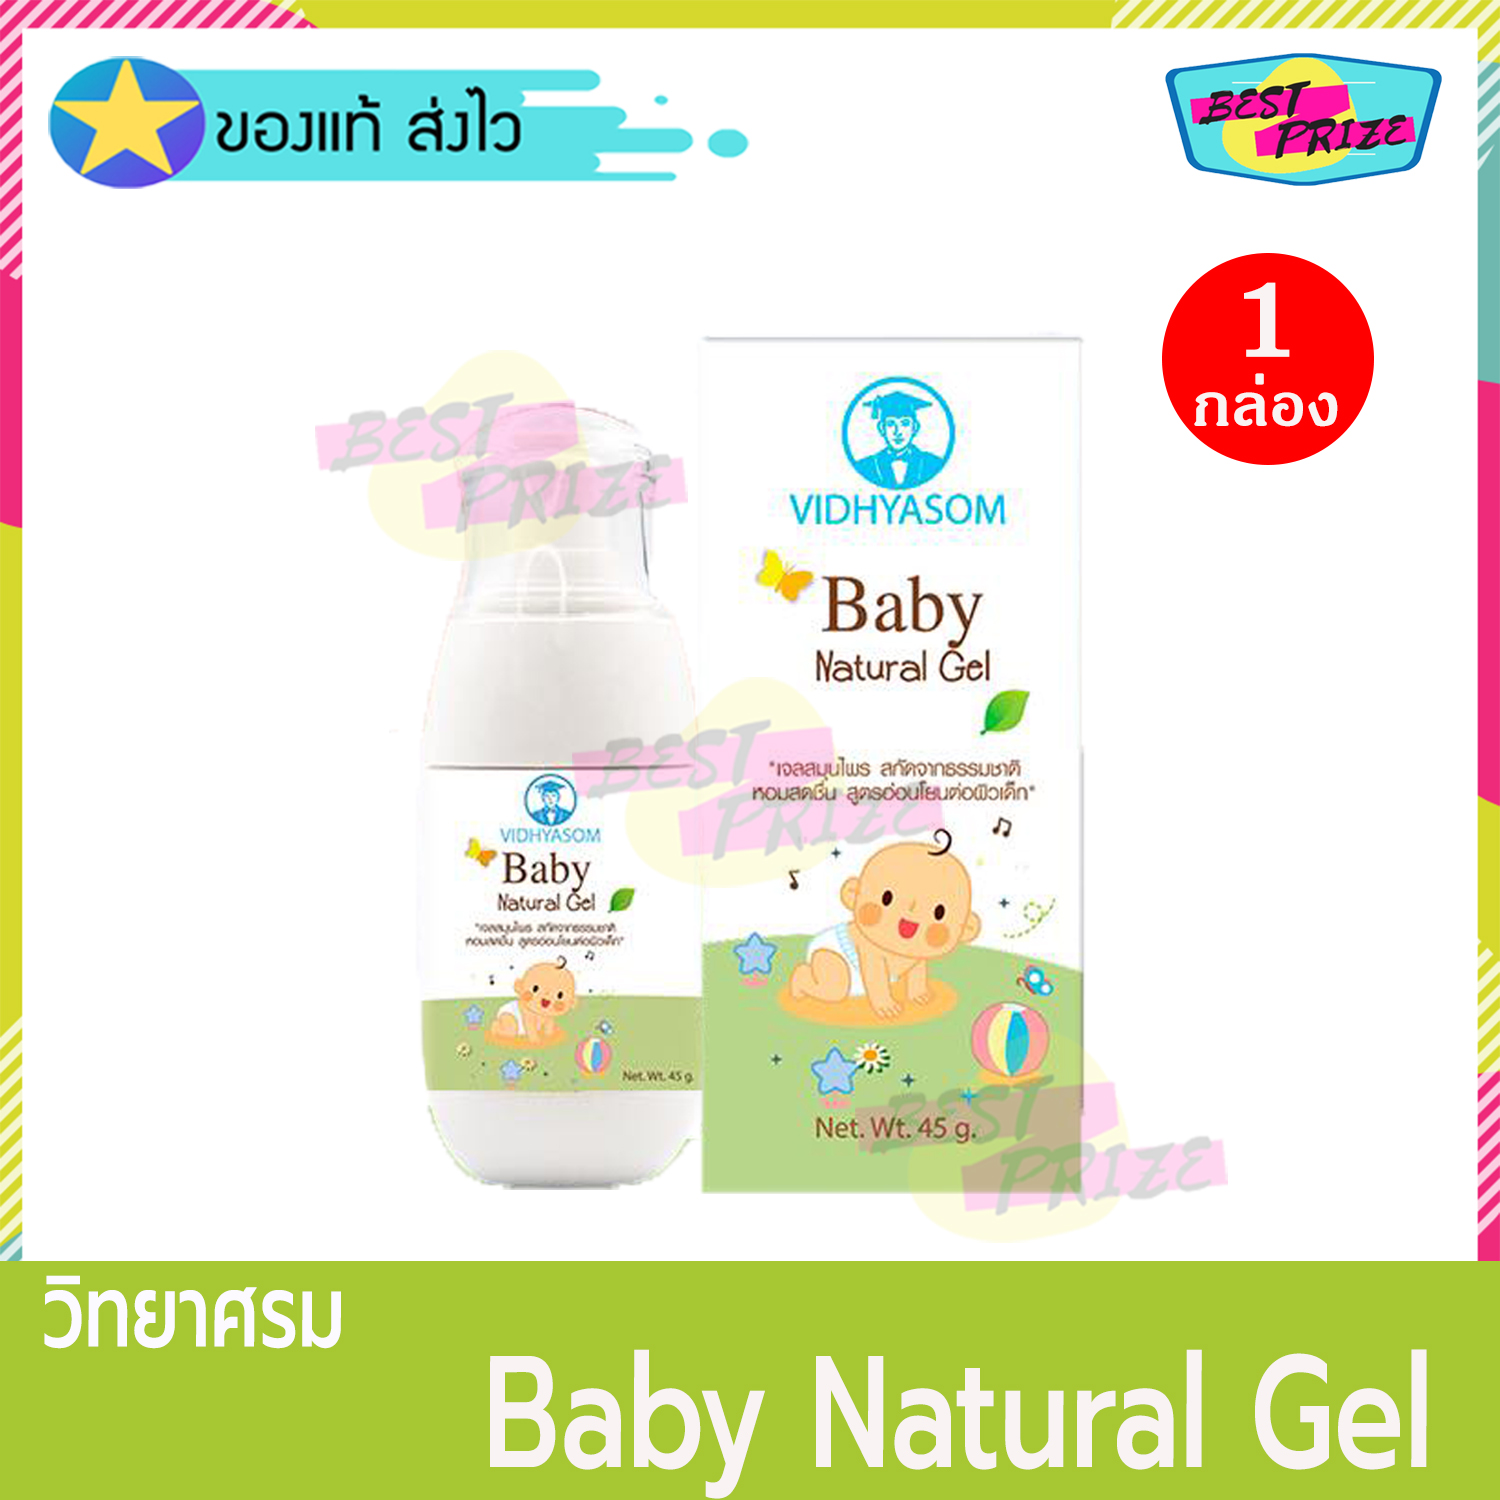 Vidhyasom Baby Natural Gel 45 g (จำนวน 1 กล่อง) วิทยาศรม เบบี้ เจล เจลเปปเปอร์มิ้น